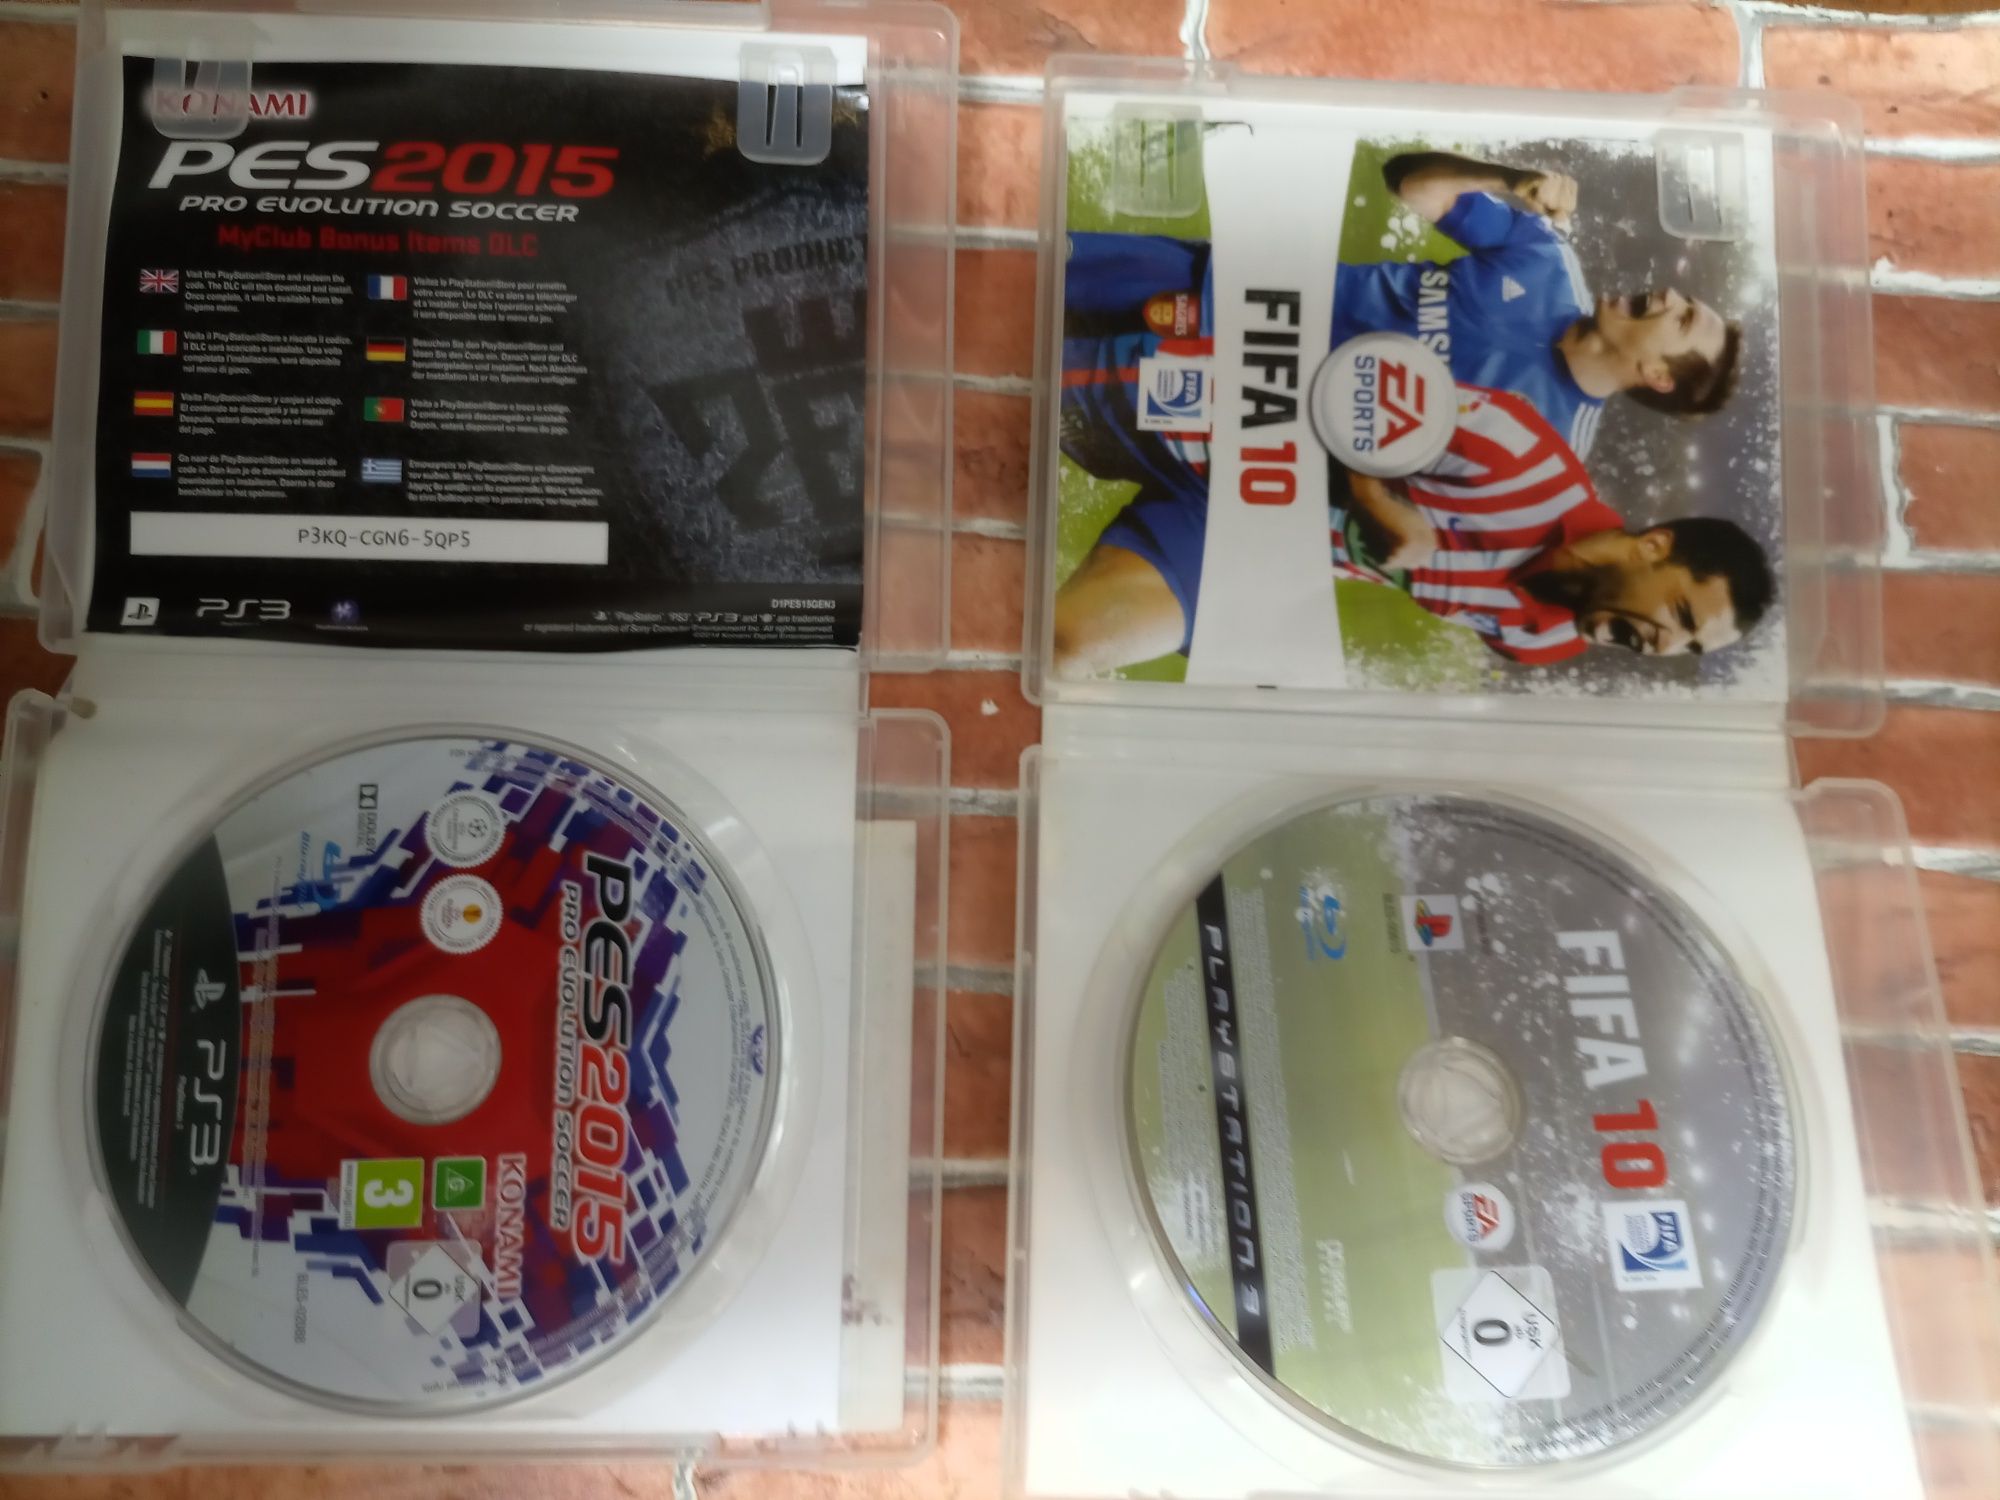 Jogos futebol PS3 5 euros cada